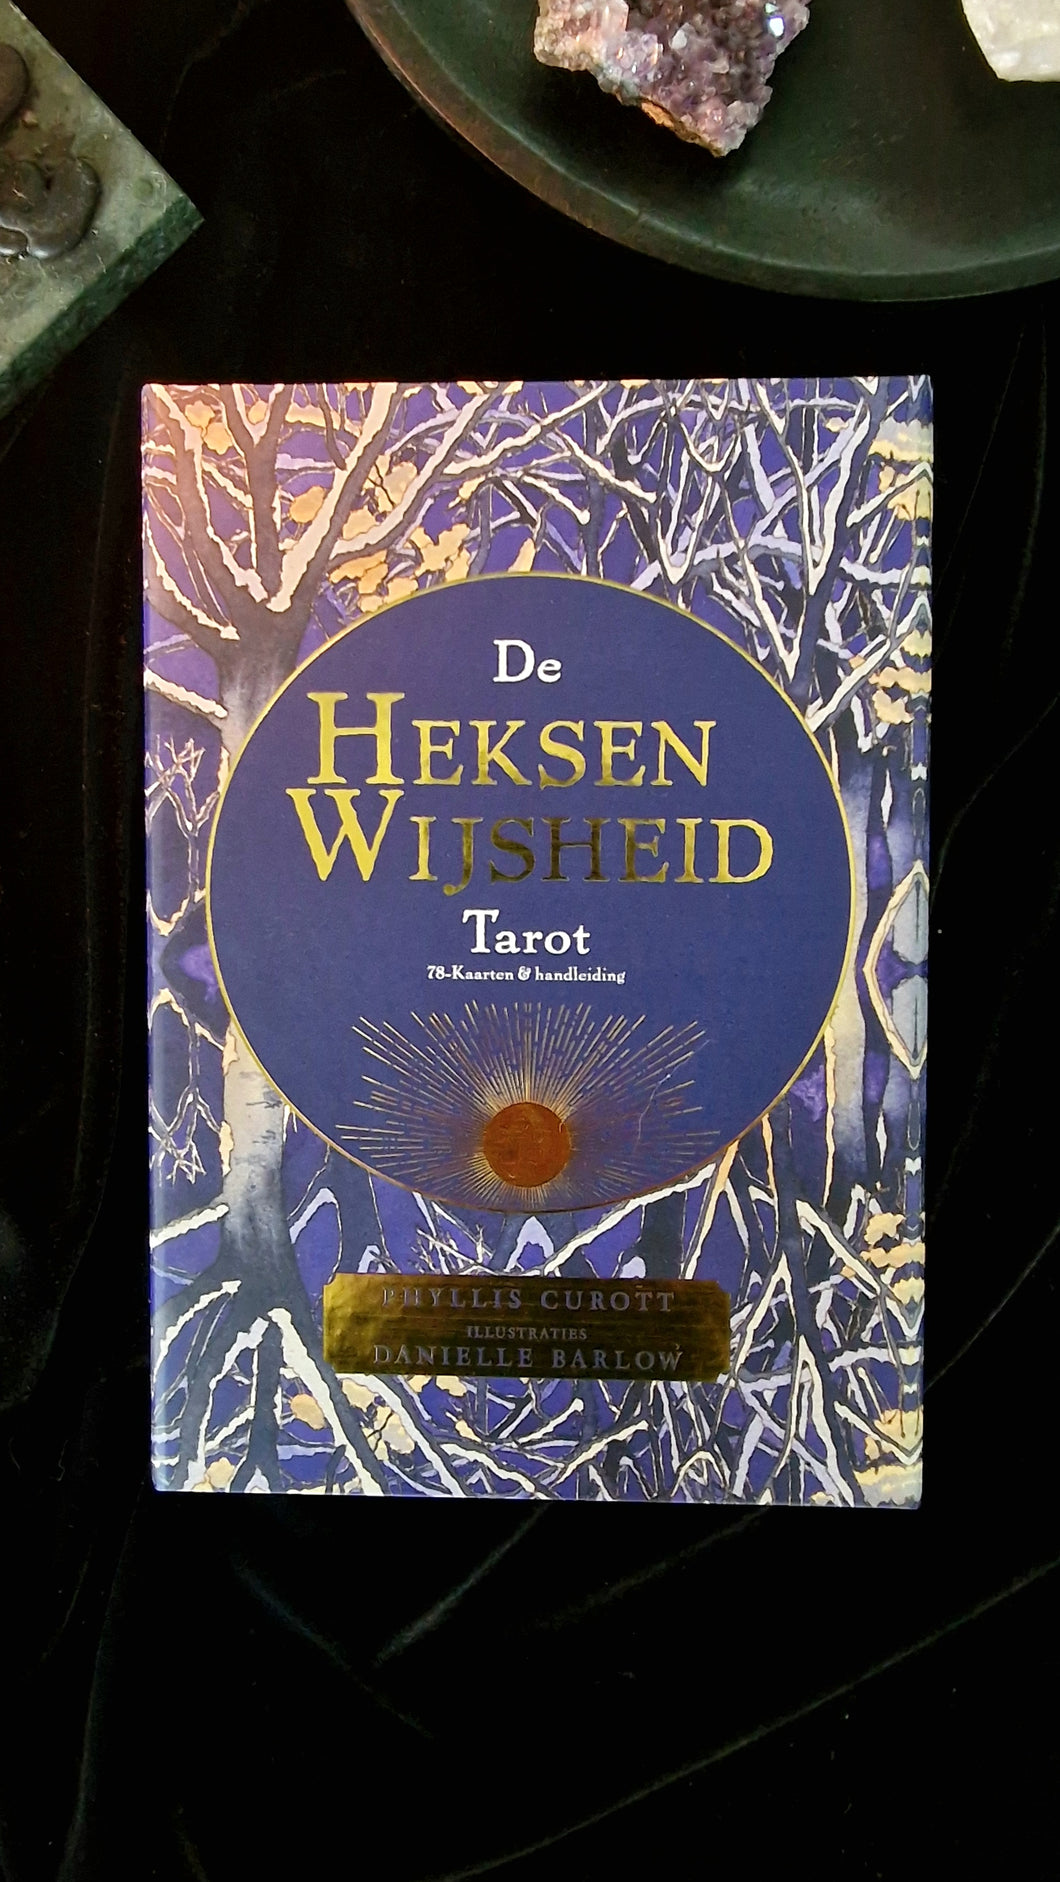 De heksen wijsheid tarot, tarot, wild wicked and free